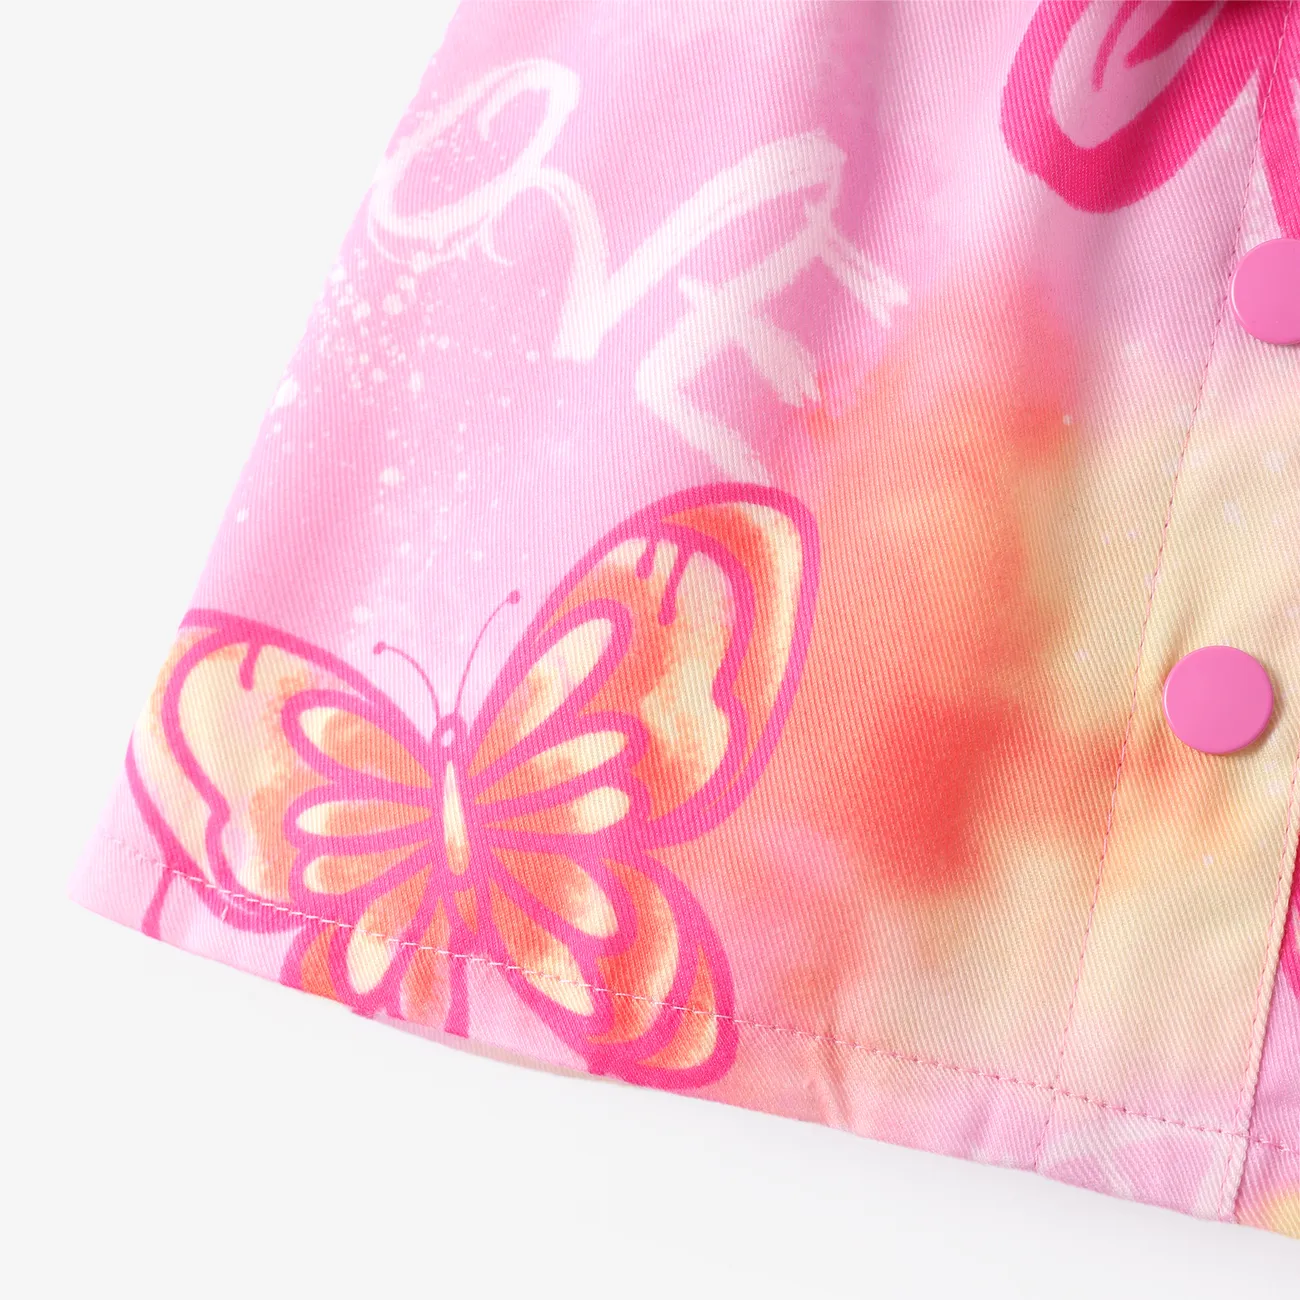 Toddler Girl 3pcs Denim Vest and Halter Design Camisole and Skirt Set Pink big image 1